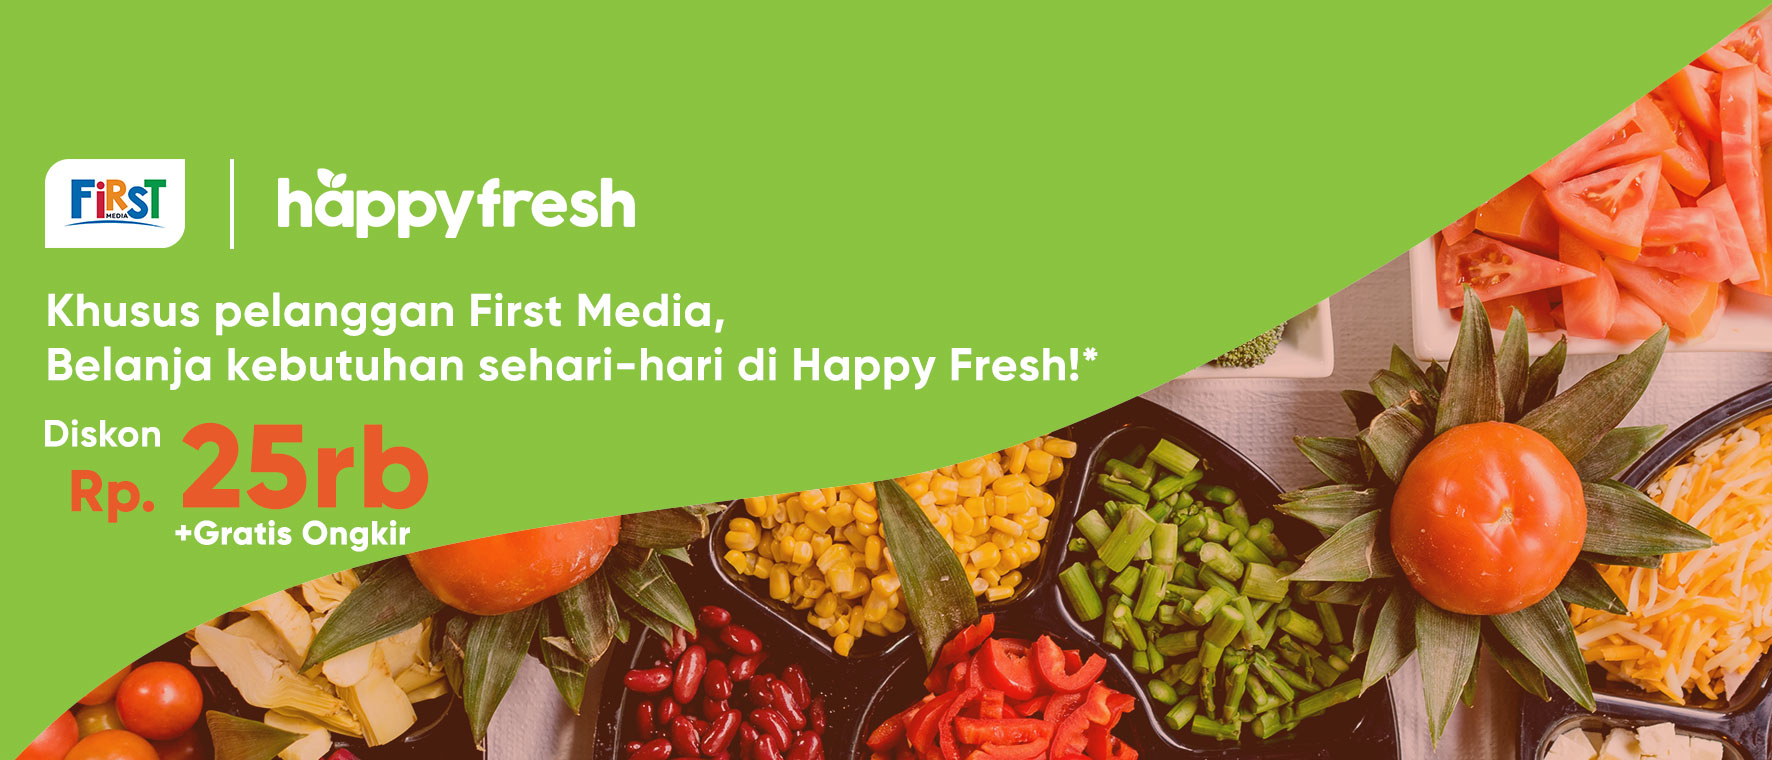 Voucher Happy Fresh untuk Pengguna First Media